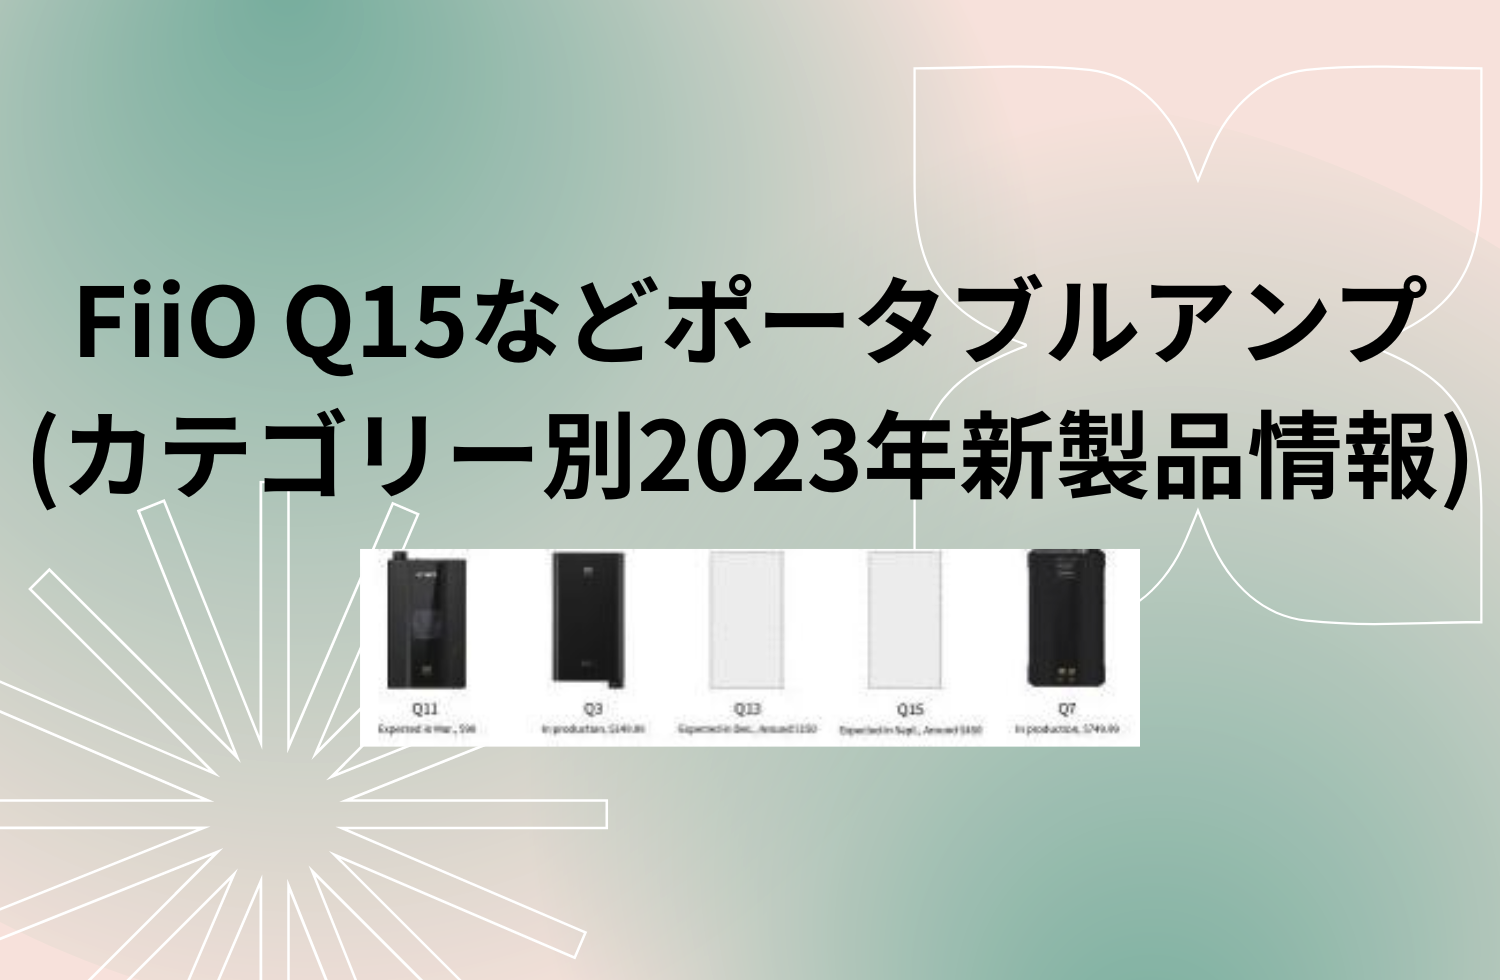 Fiio Q15などポータブルアンプ V2(カテゴリー別2023年新製品情報)